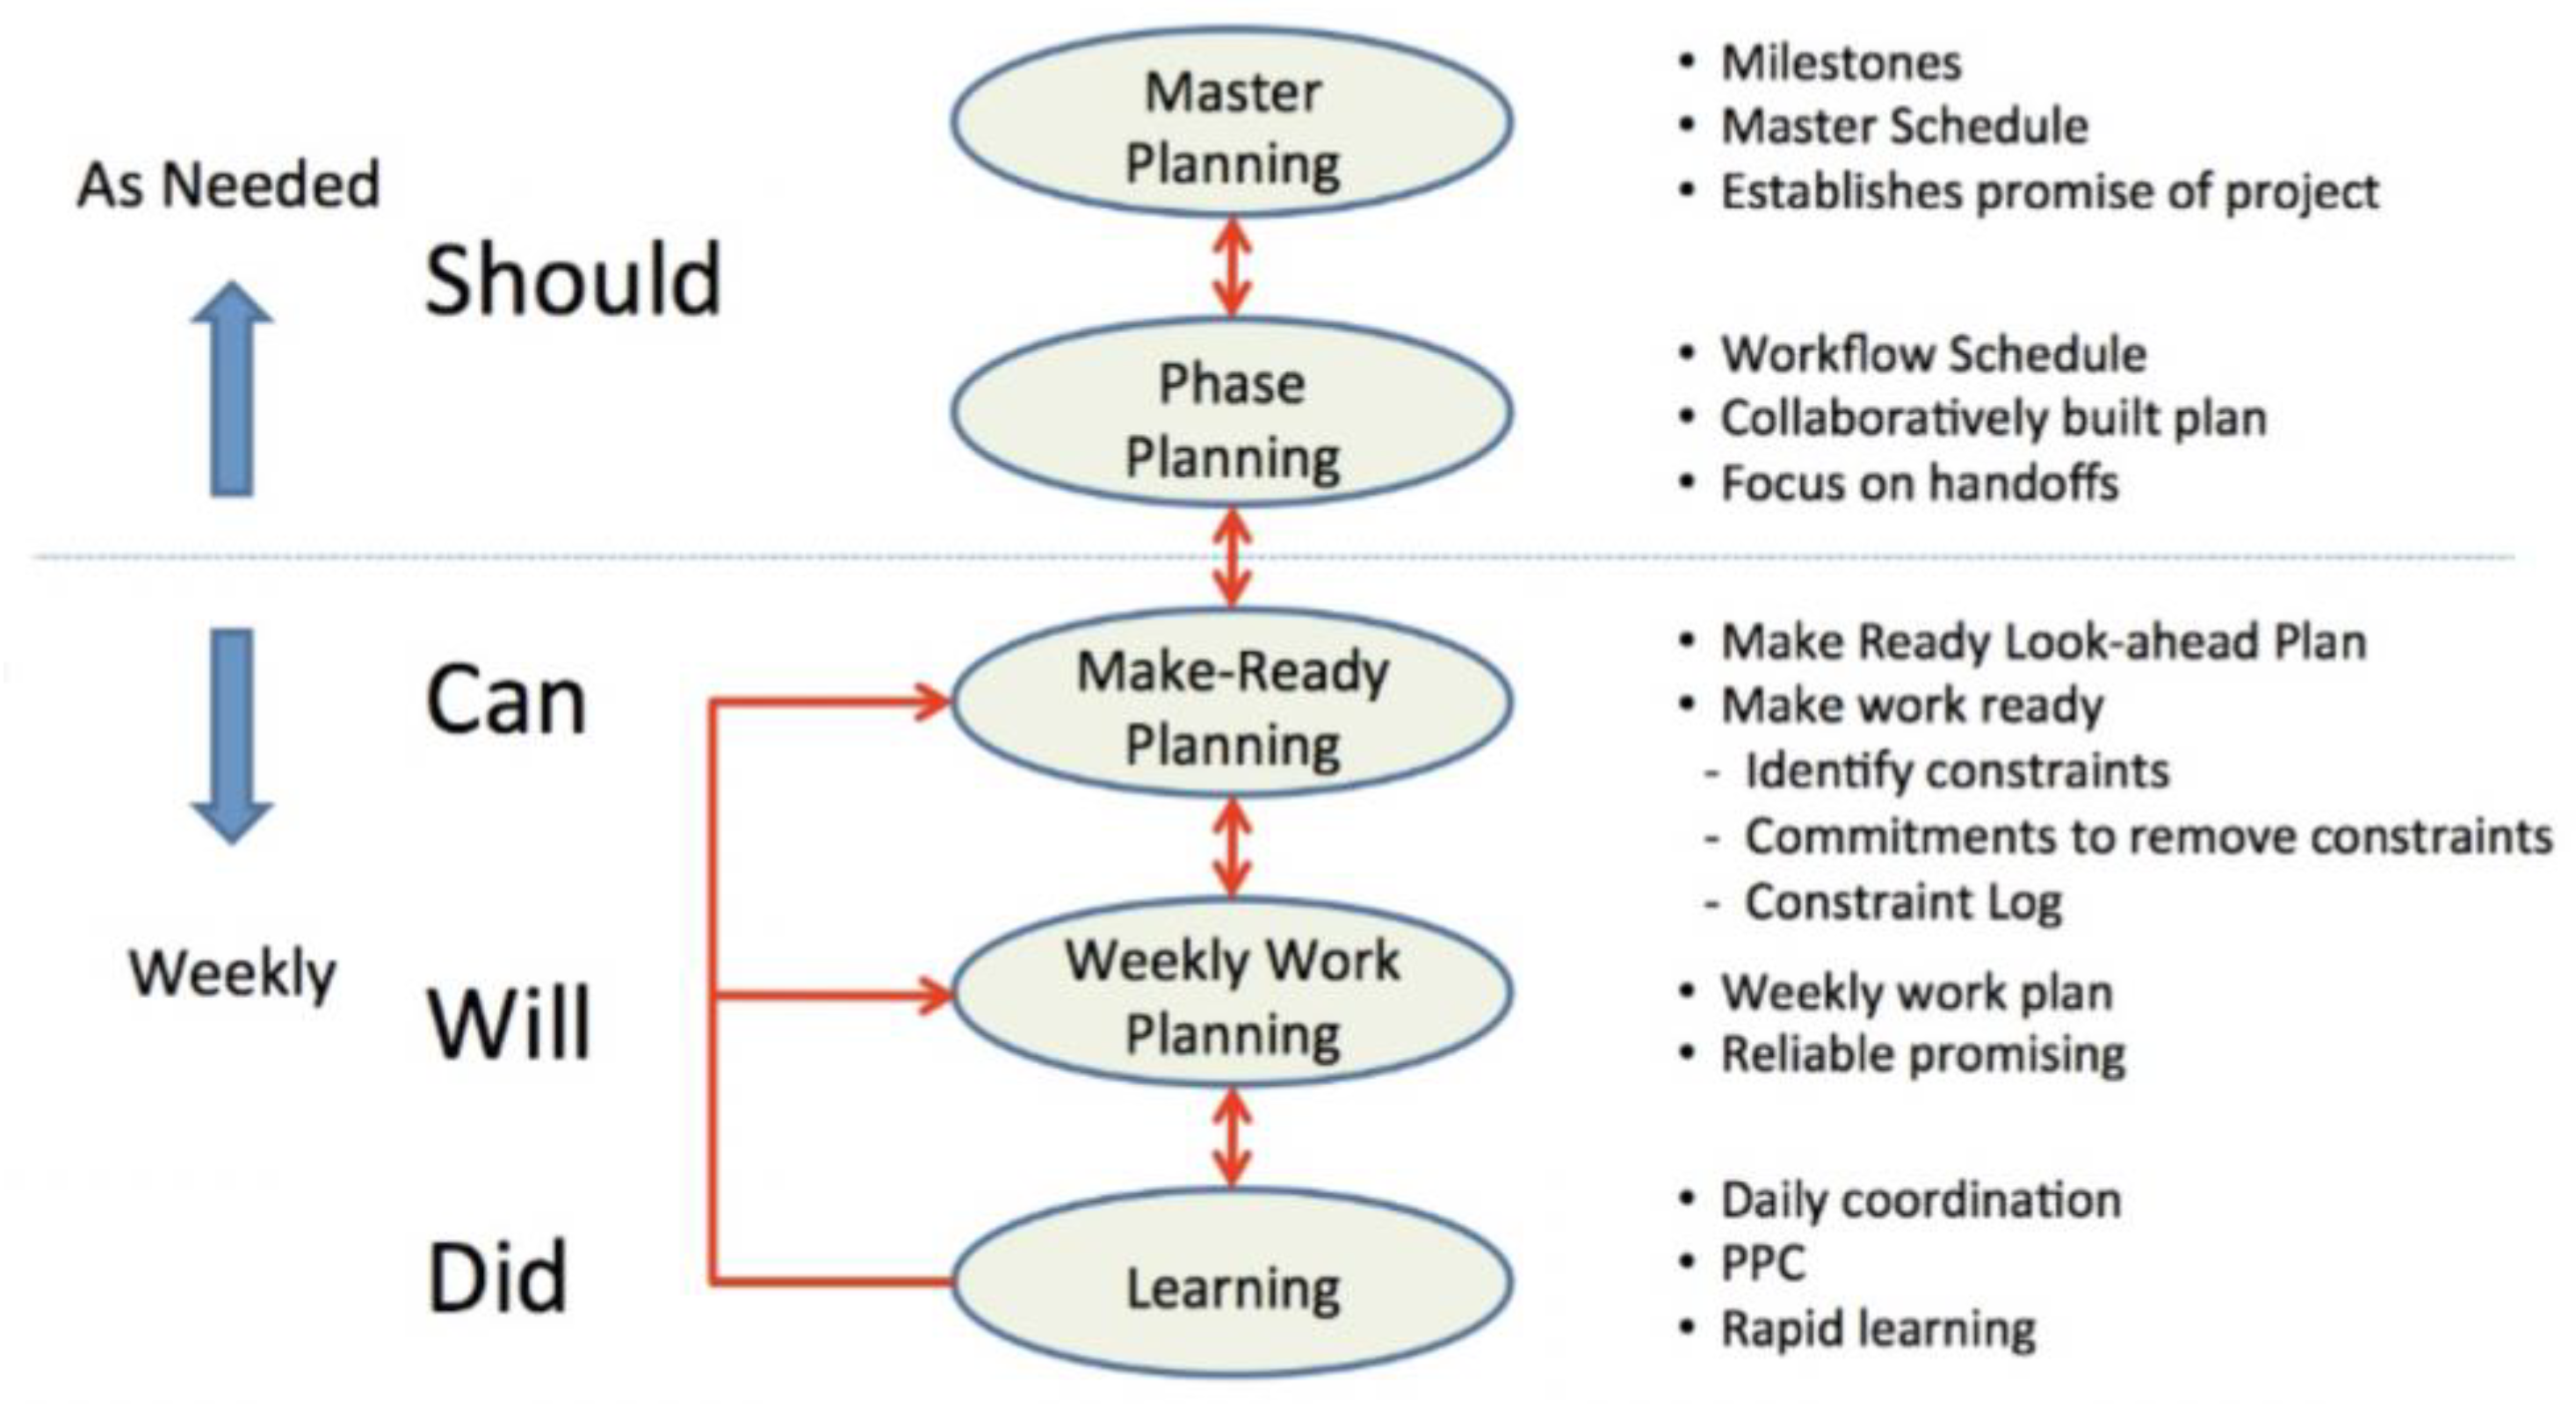 Promising plans. Last Planner System. Master planning. Work Plan. Supplier Master Schedule.